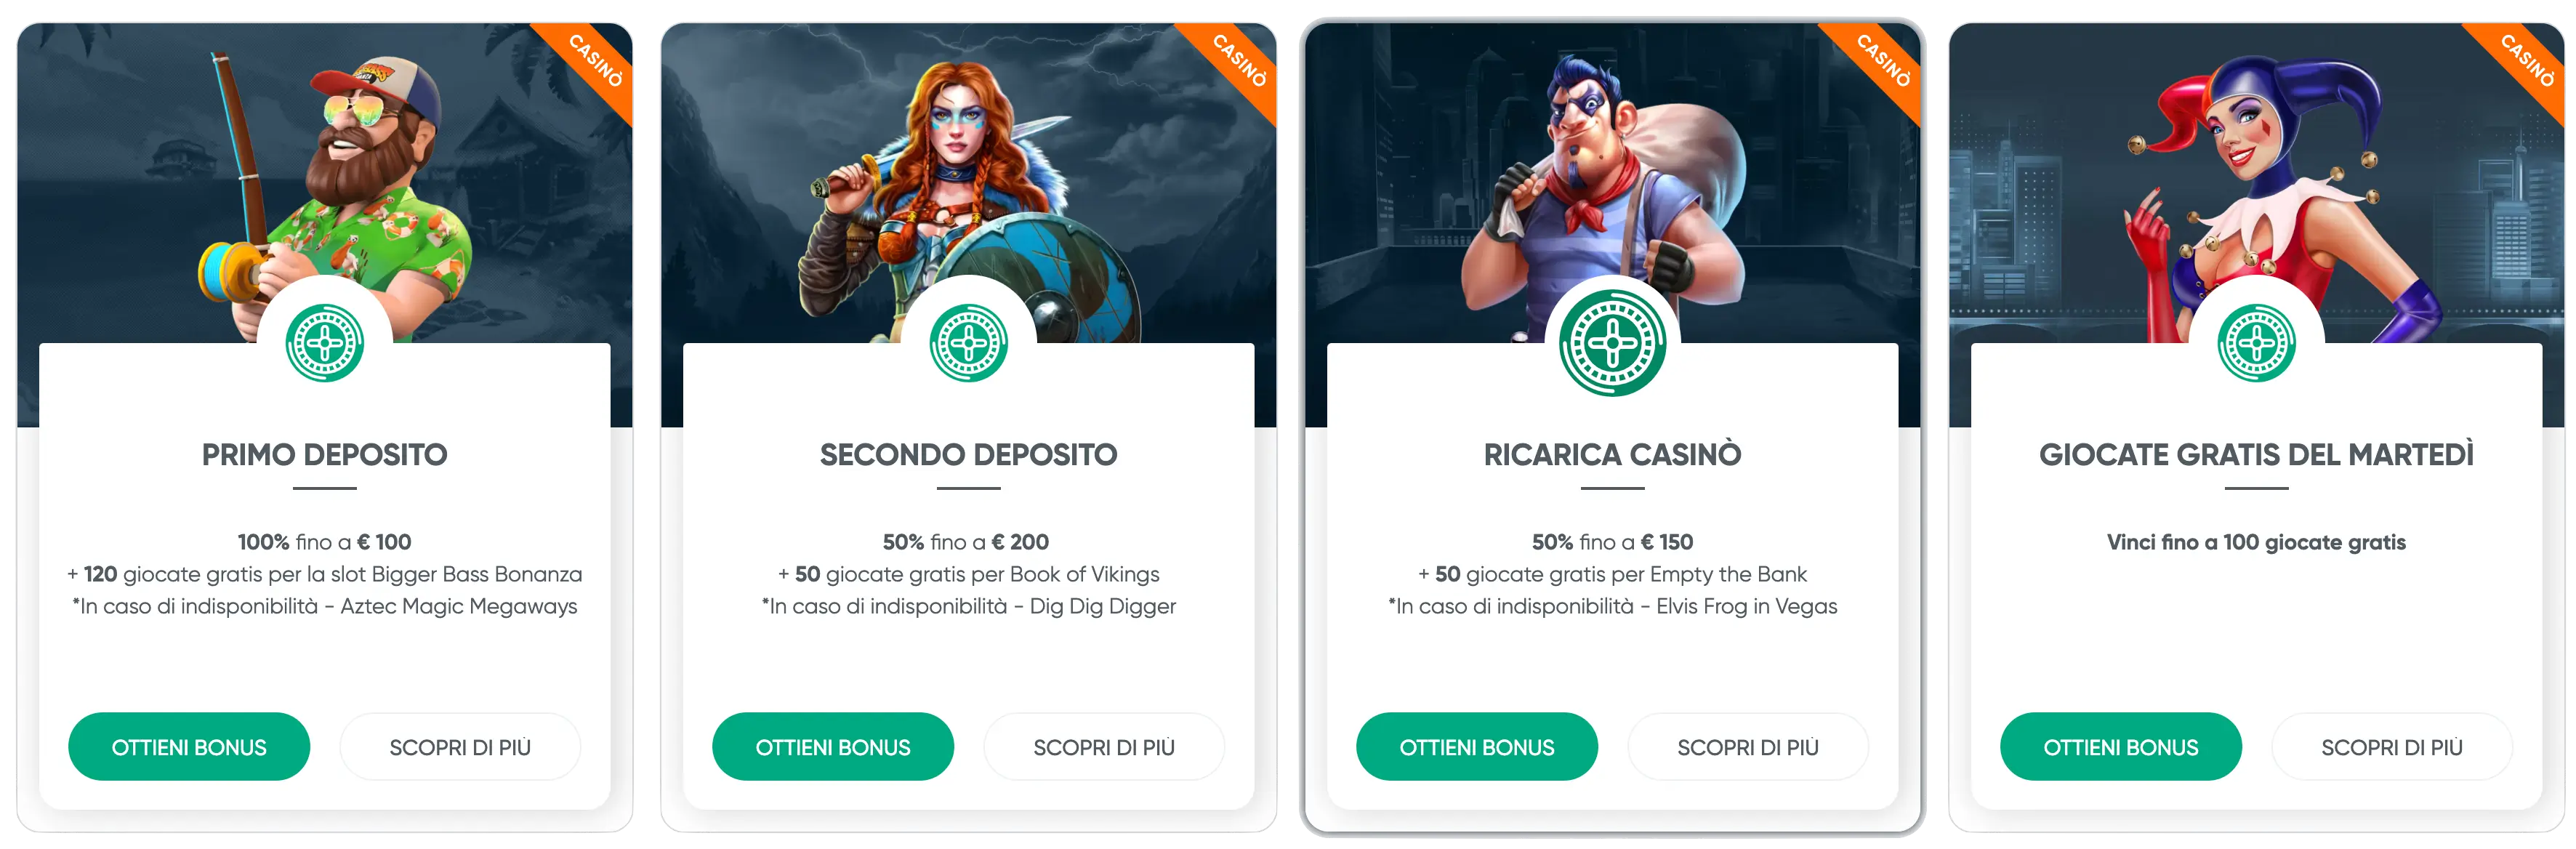 ivibet-bonus-casino